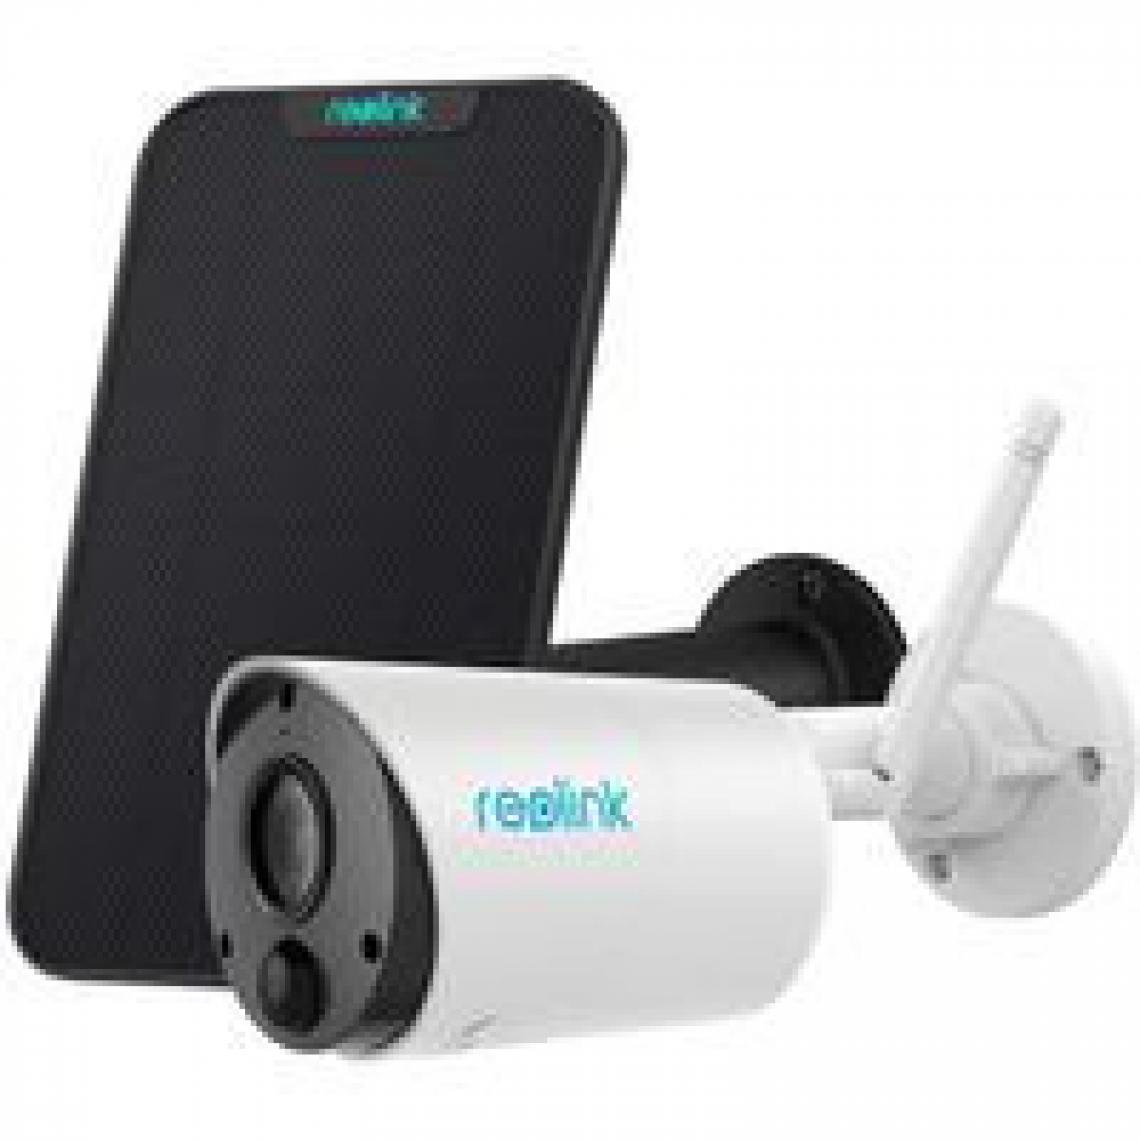 Reolink - Argus Eco avec Panneau Solaire - Caméra Solaire Extérieur sur Batterie WiFi sans Fil 1080P Audio Bidirectionnel - Caméra de surveillance connectée